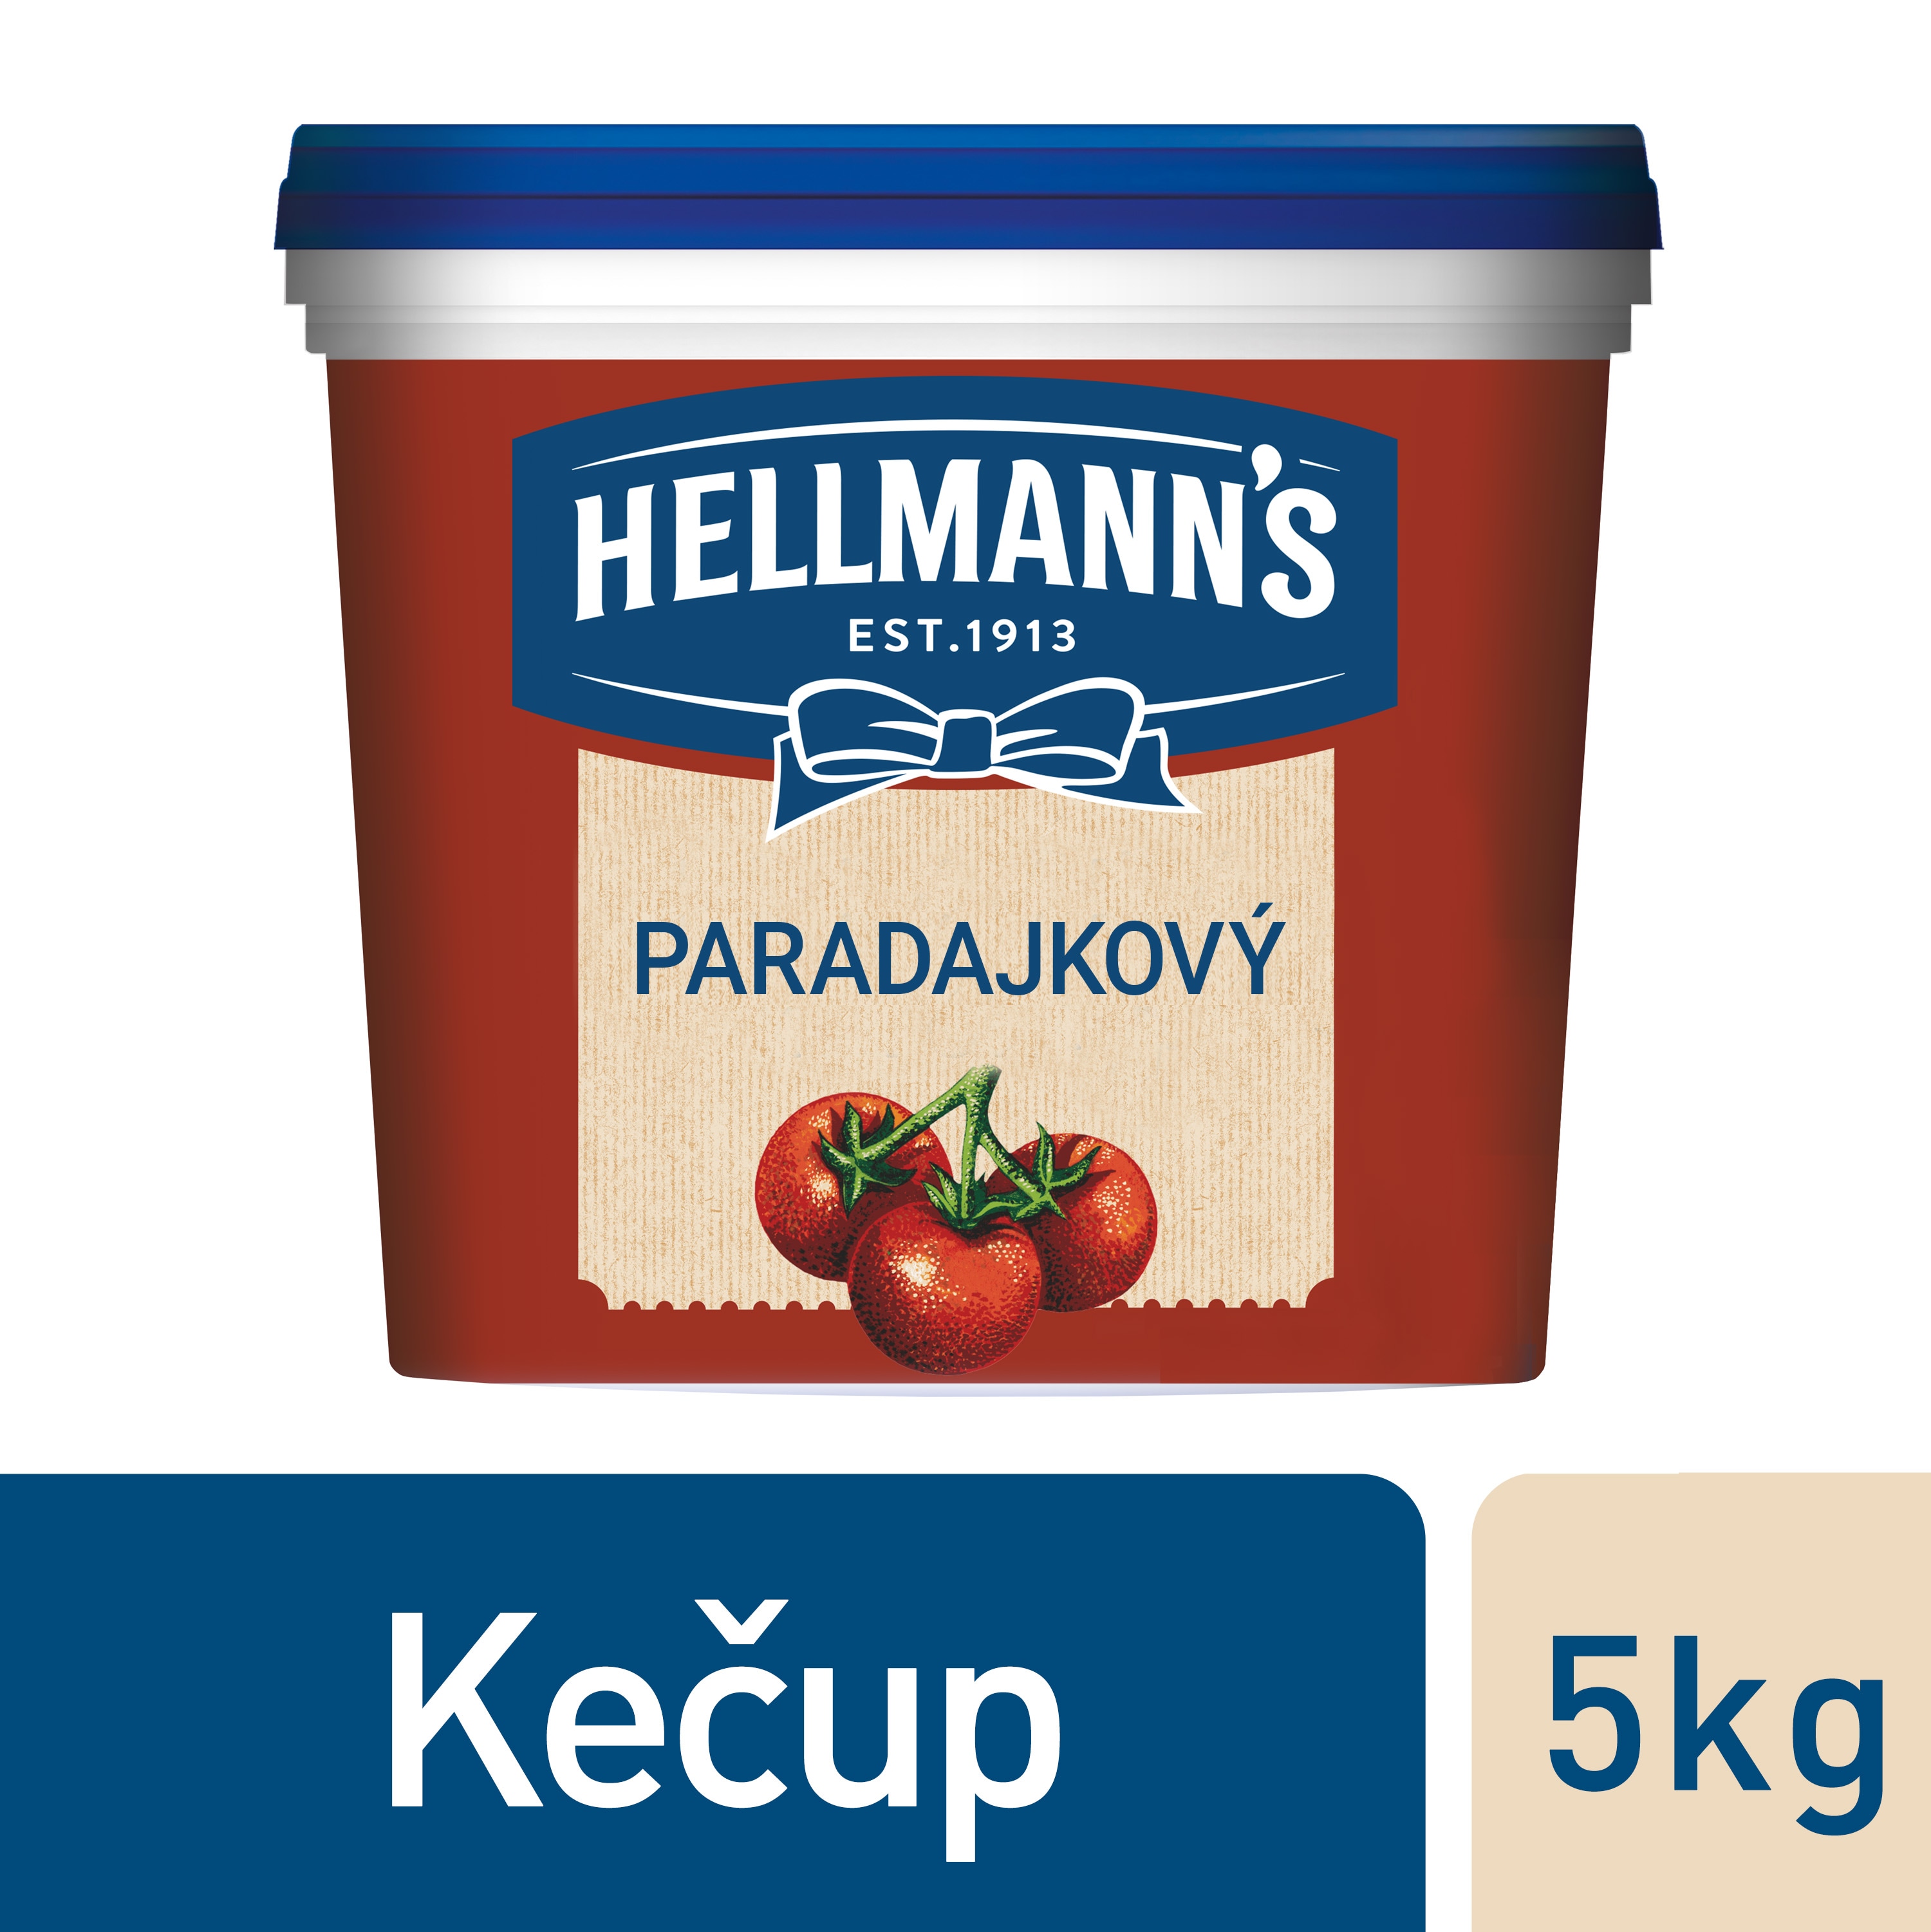 Hellmann's Kečup 5kg - Hellmann´s kečup, z prvotriednych paradajok, z trvalo udržateľných zdrojov.